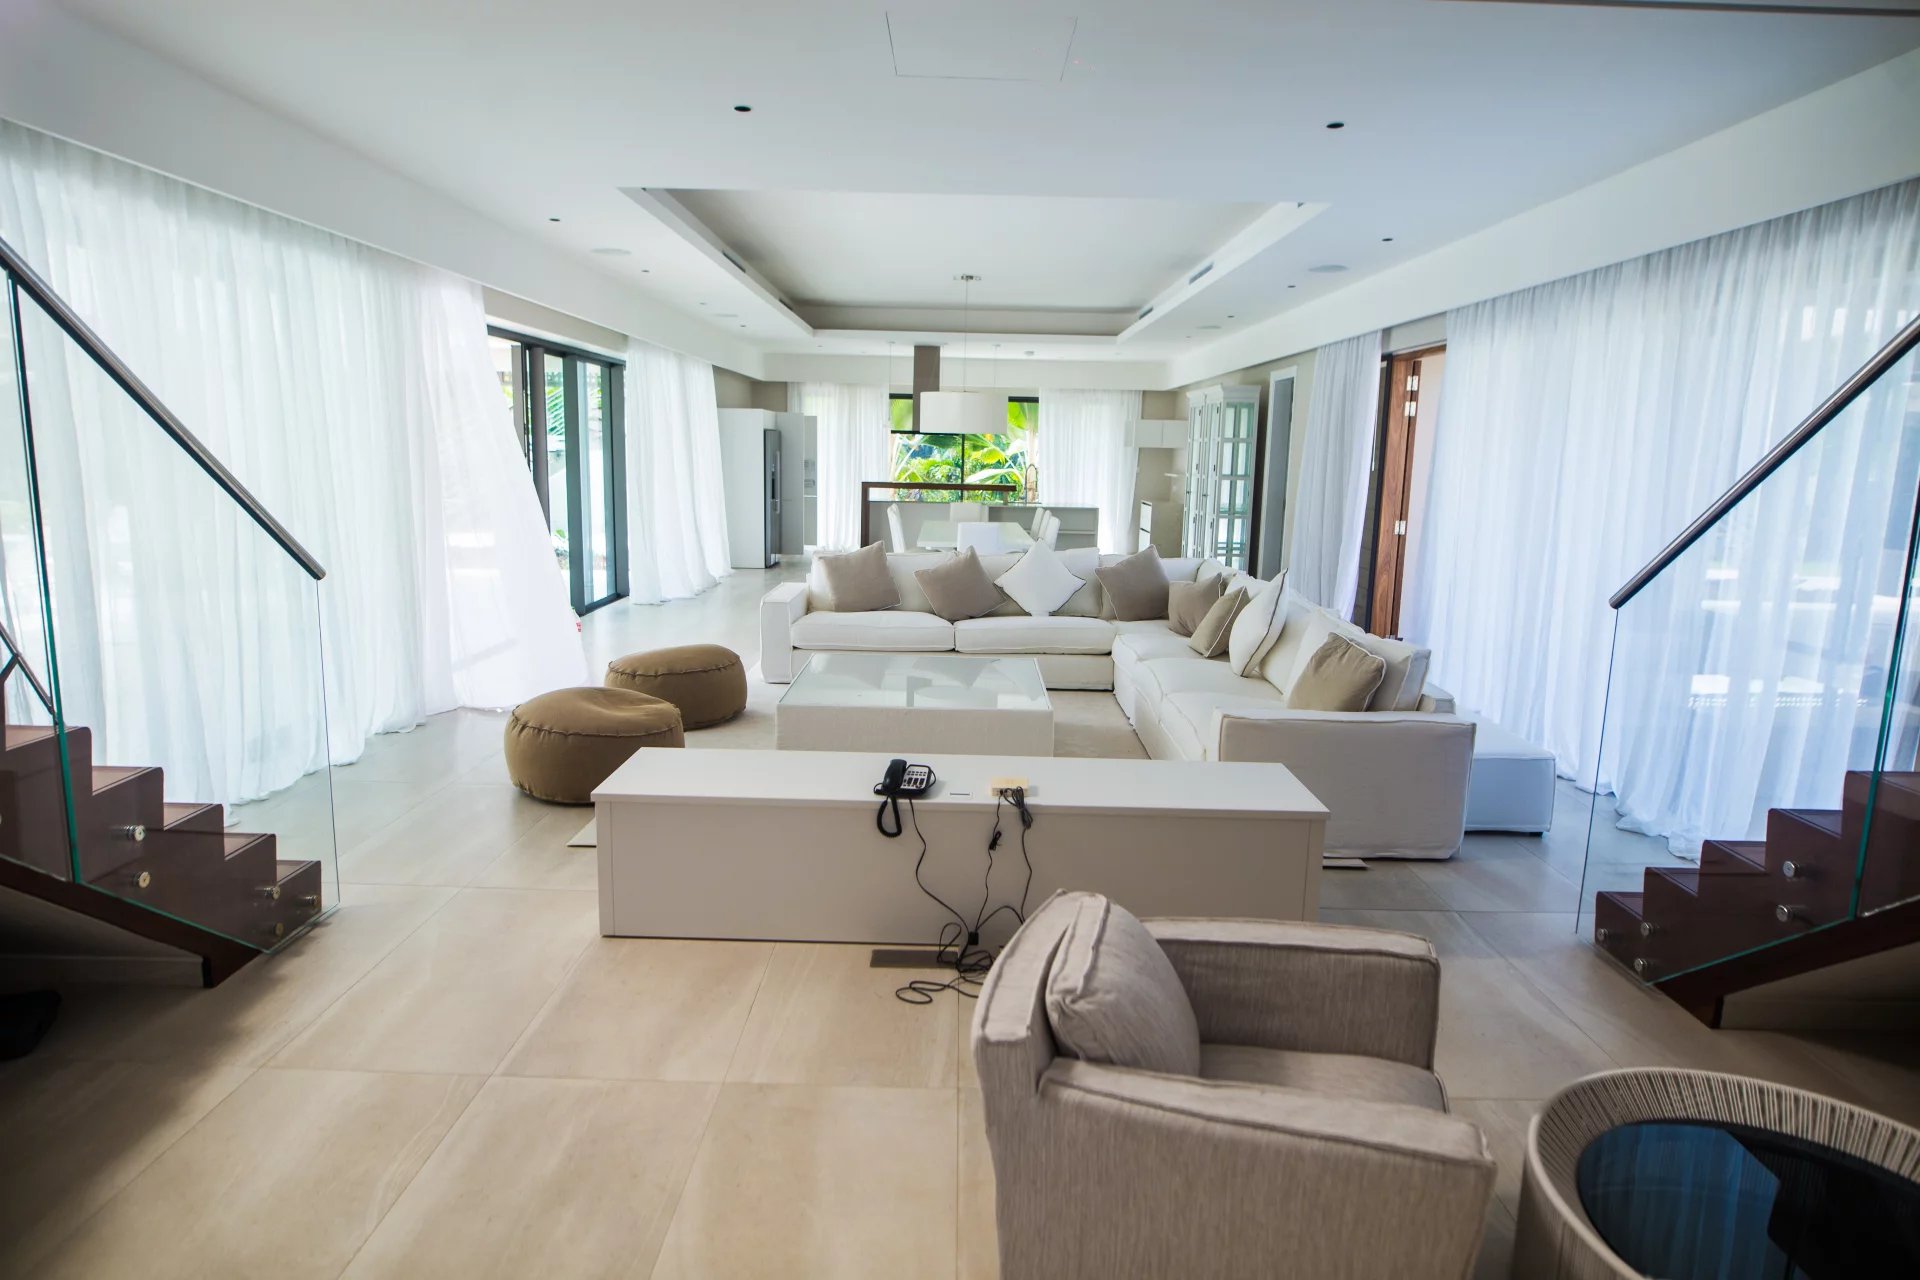 BEAU CHAMP - Villa contemporaine - 5 chambres